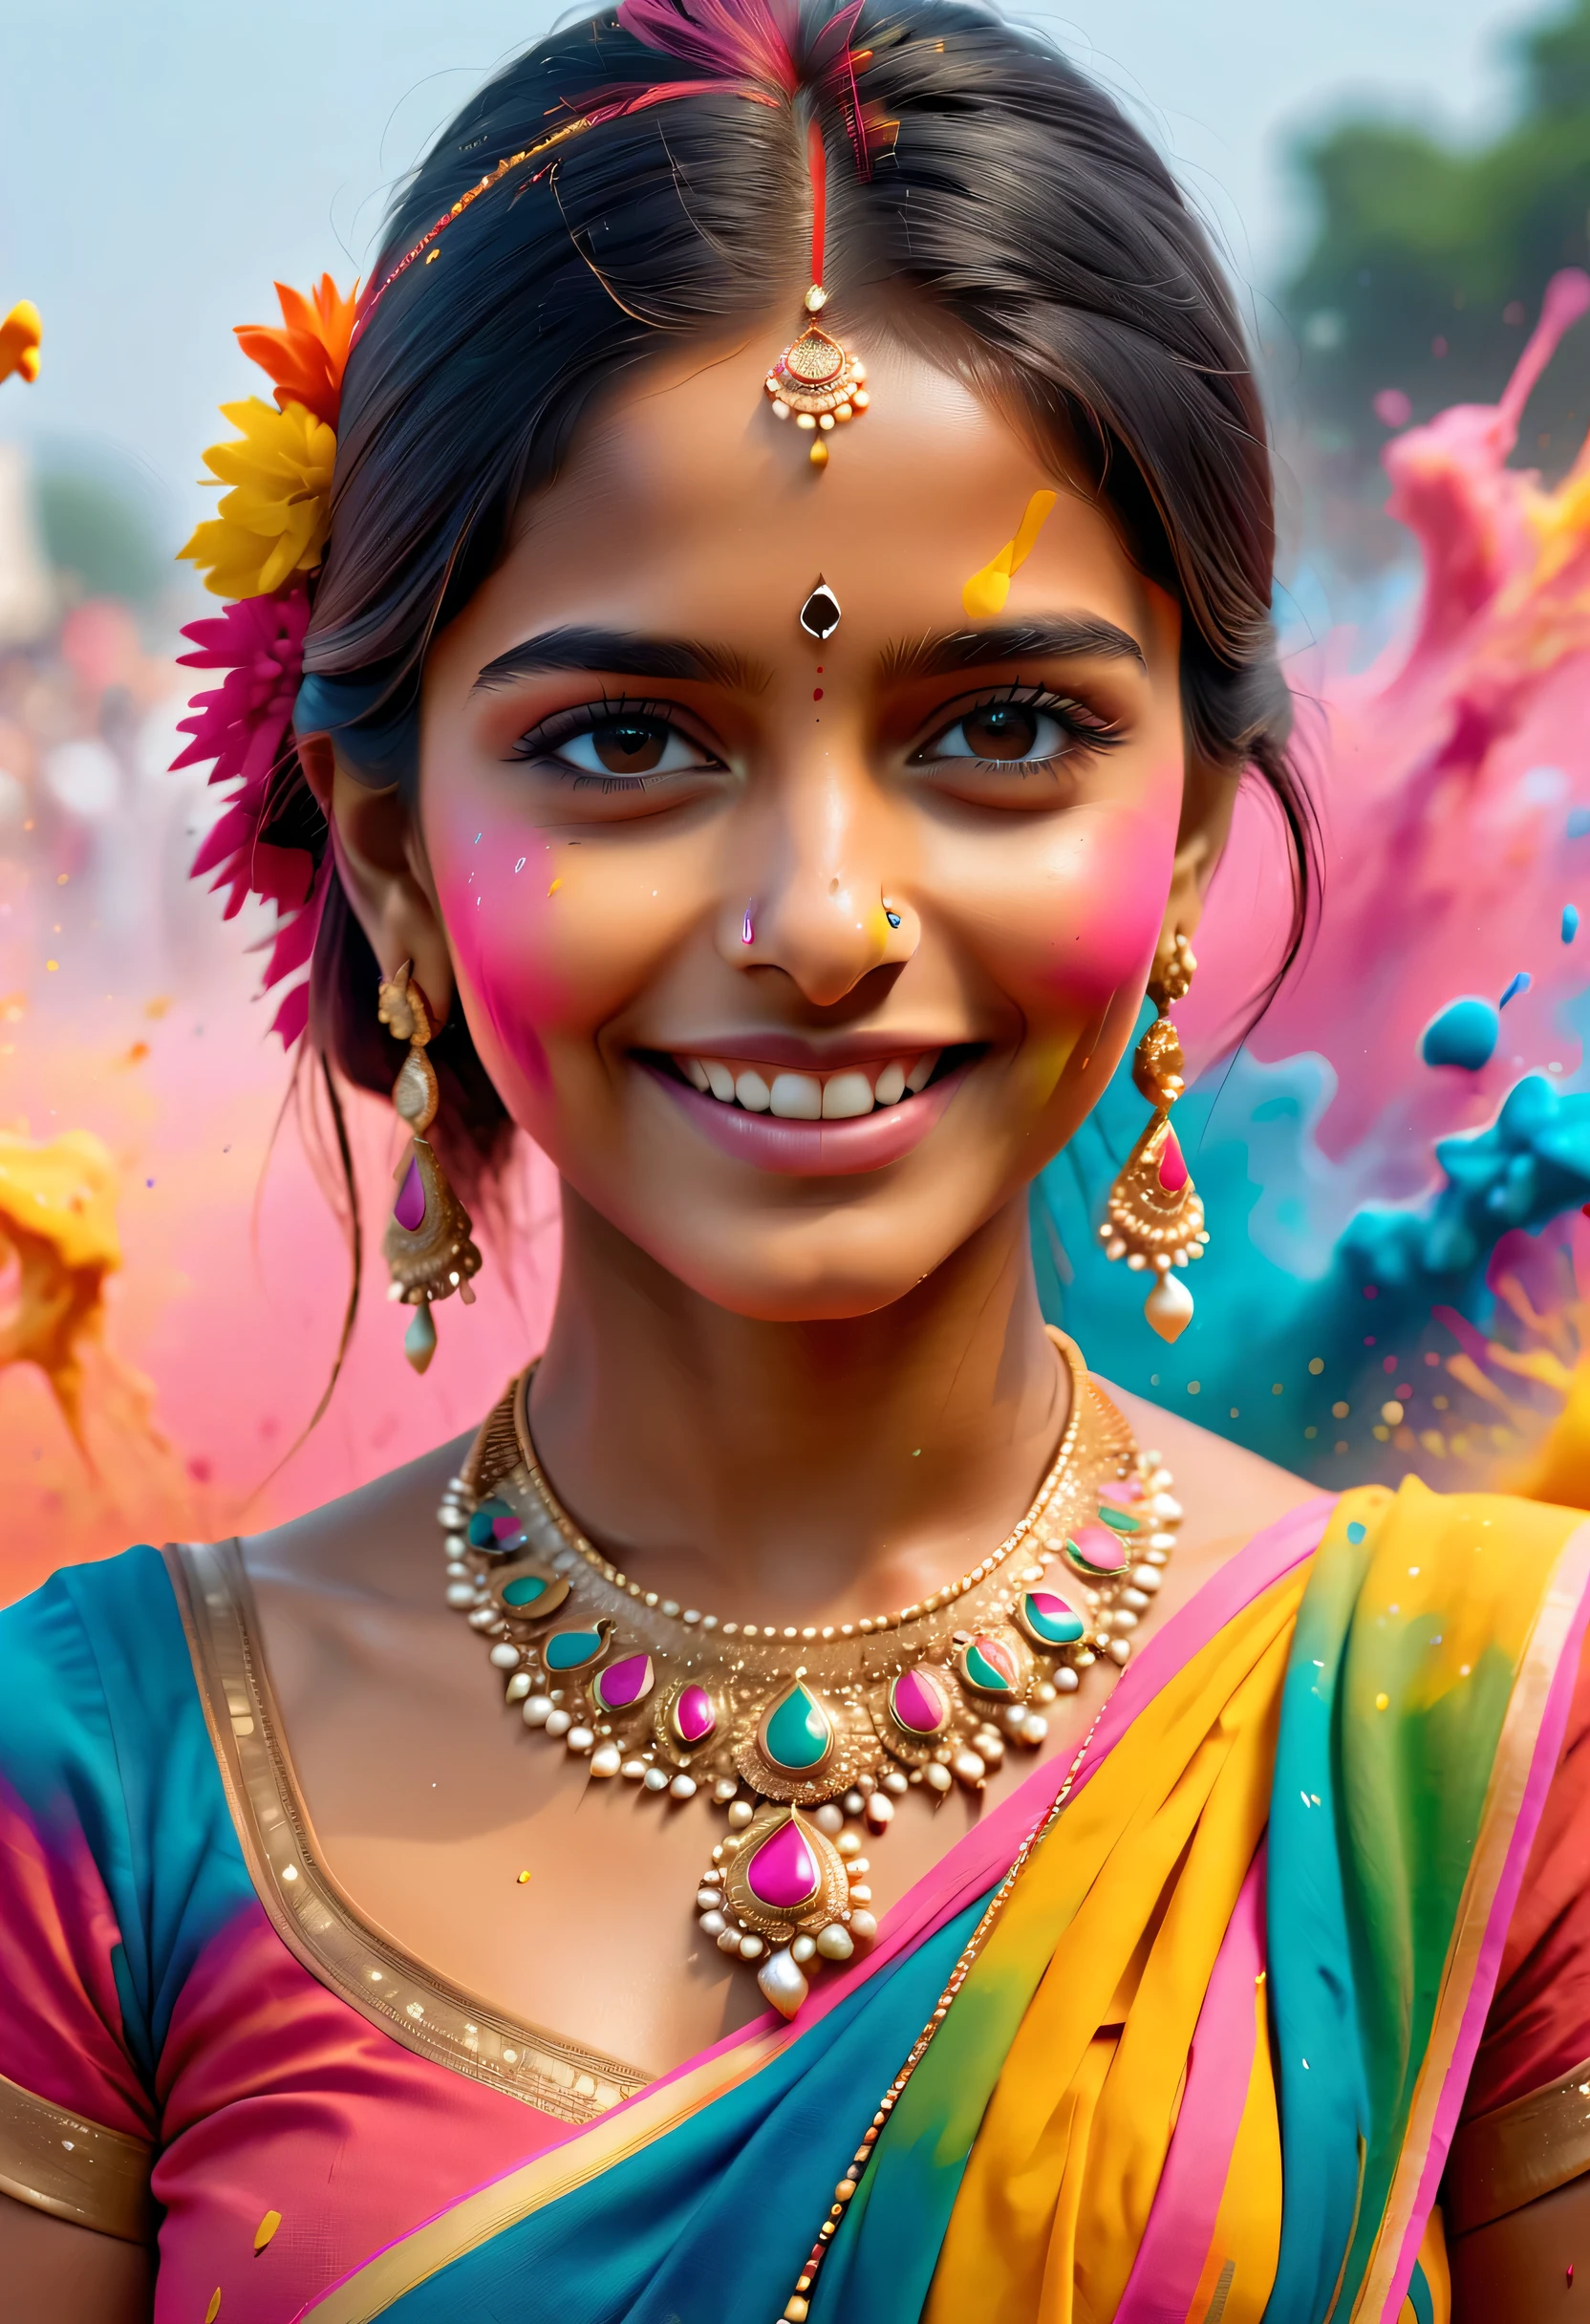 (Melhor qualidade de imagem，4K,8K，alta definição，Obra de arte:1.2)，Super detalhado，(realista，realista，realista:1.37)。Festivais indianos，festival de pintura，tinta respingada：1.37.linda garota indiana，Face painted with colorida paint，olhos dourados，jóias de ouro requintadas，feliz，felicidade，sorriso contagiante，Trajes coloridos，unhas coloridas，身上被tinta respingada，Splashing colorida paint at the event，fundo de respingos de tinta，彩色tinta respingada，Movimento Energético，Arte abstrata dinâmica e poderosa，colorida，propileno，Tons vívidos do arco-íris，felicidade活泼的气氛，laranja brilhante，rosa，caprichoso e sonhador，respingo espontâneo，Contraste de cores em negrito。